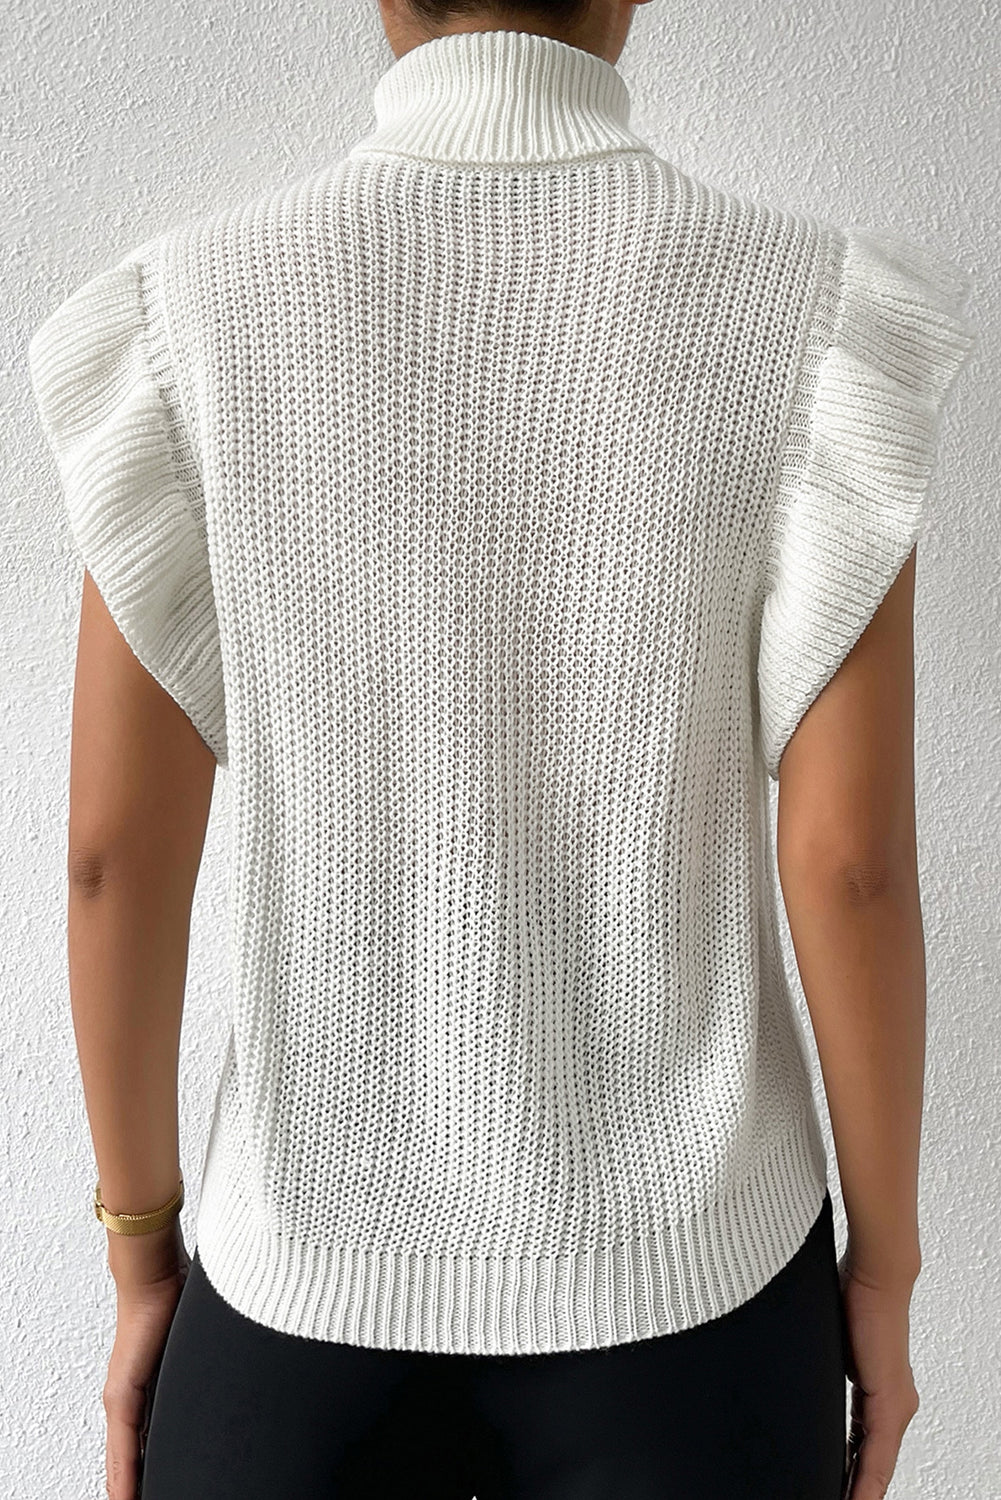 Maglione arricciato lavorato a maglia a trecce a maniche corte con collo alto bianco